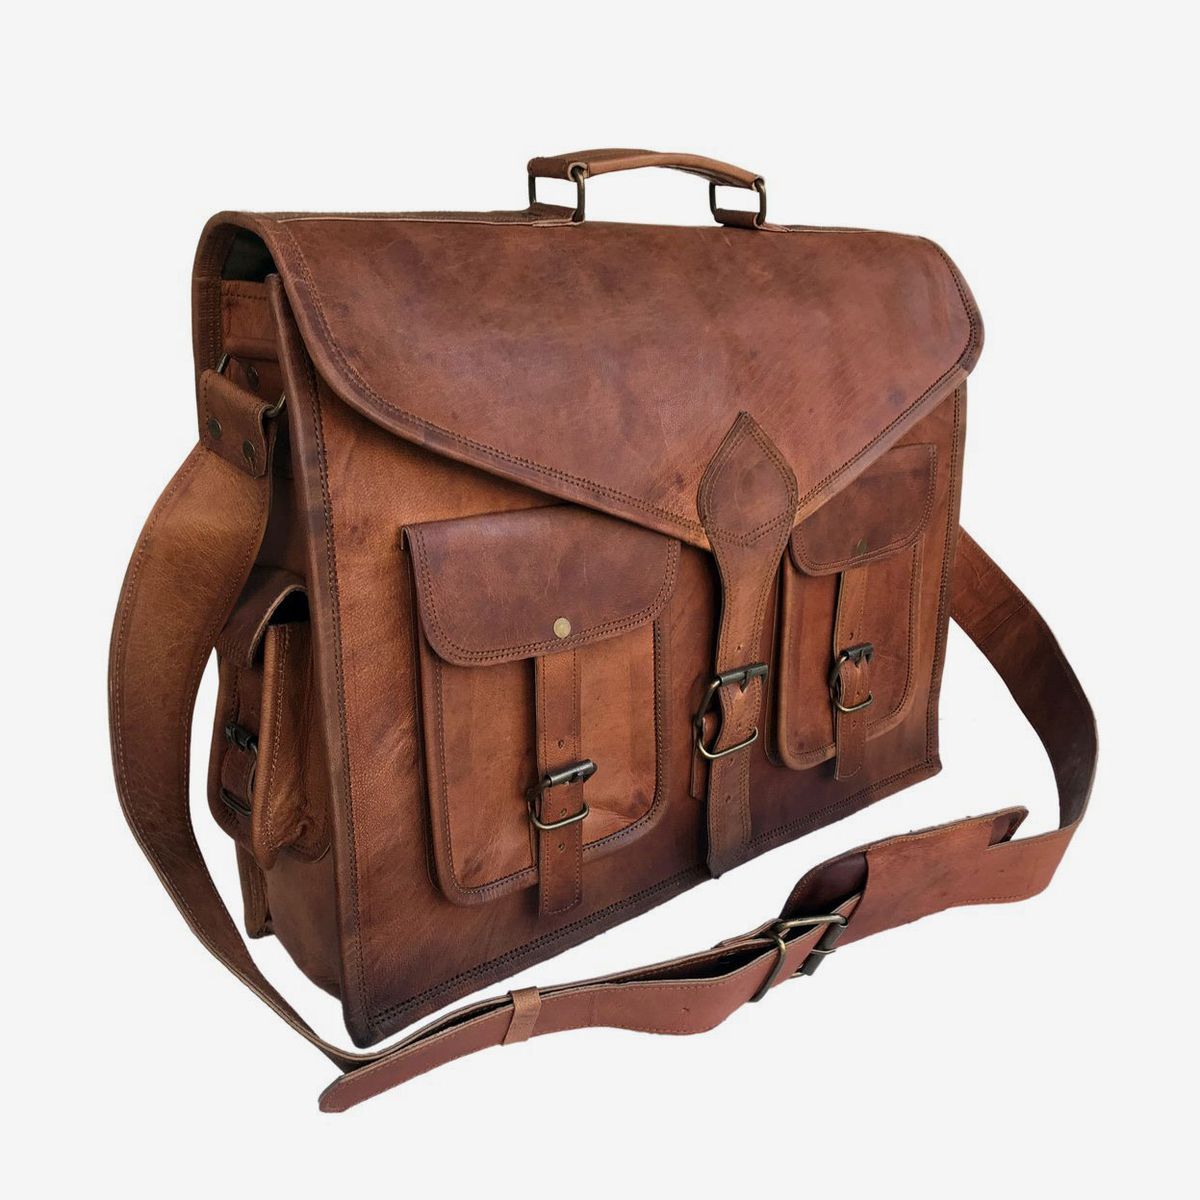 UBORSE Men’s Shoulder Bag Portable Casual Crossbody Messenger Bag 7.9 Laptop Handbag Multi-pockets Utility Satchel for Travel Work Hiking 